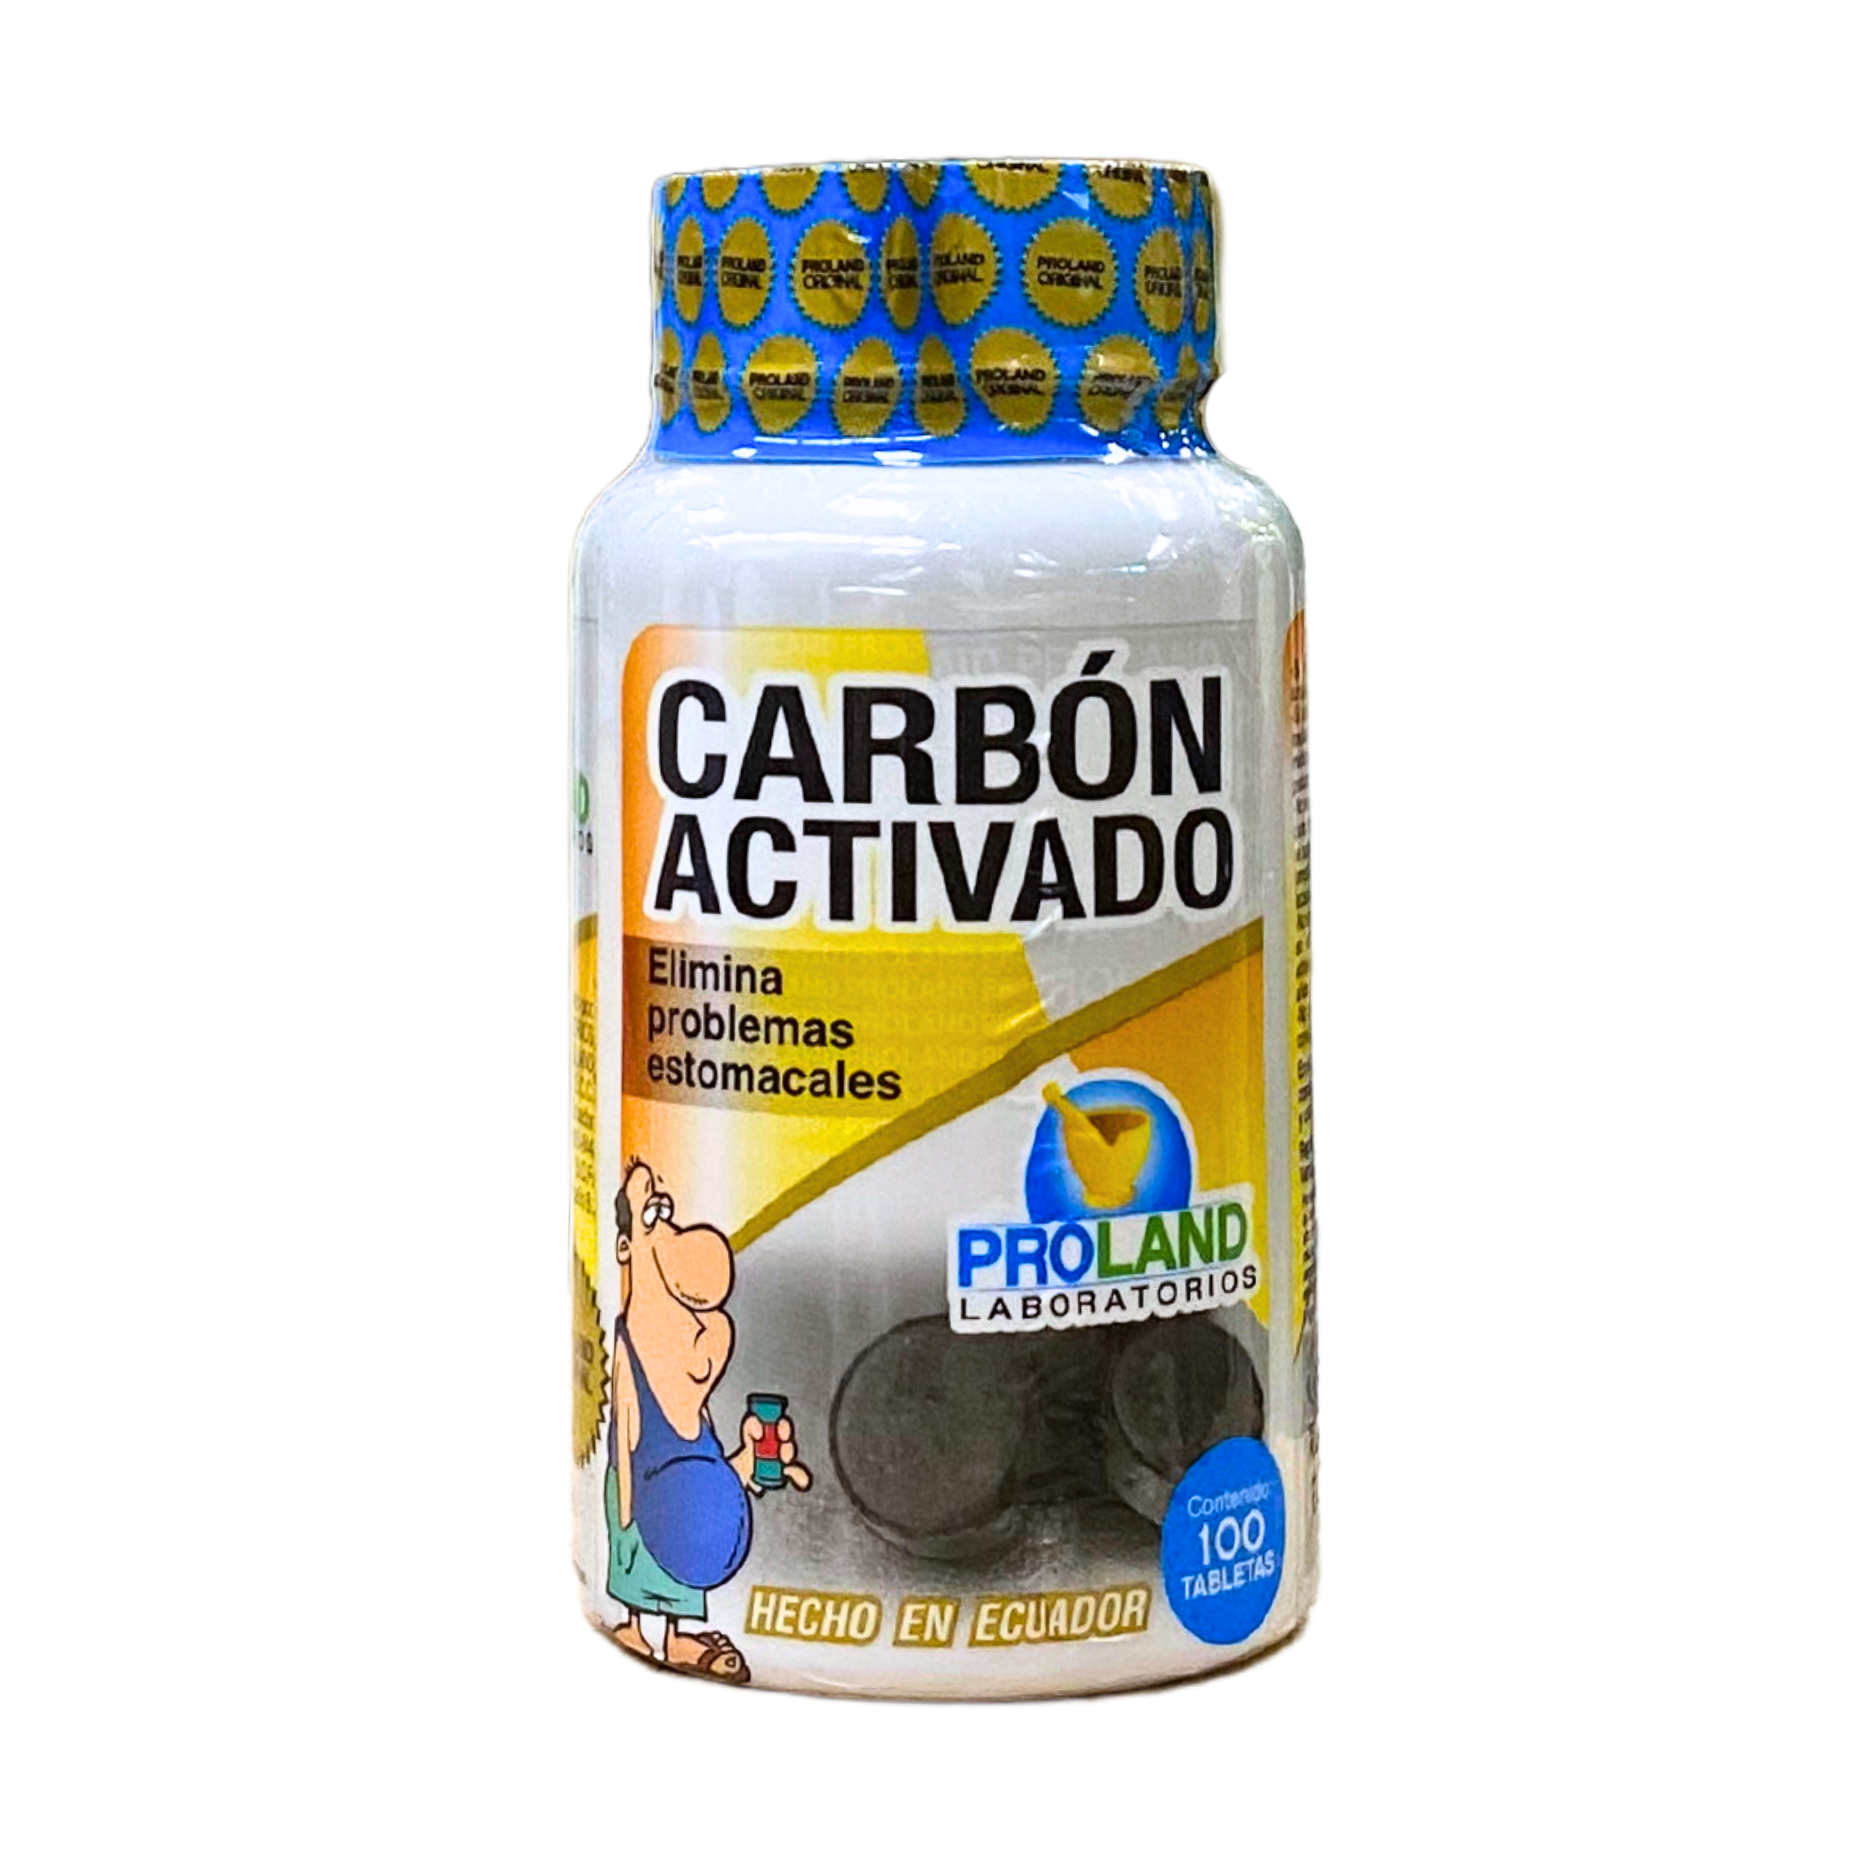 Carbón activado Ecuador